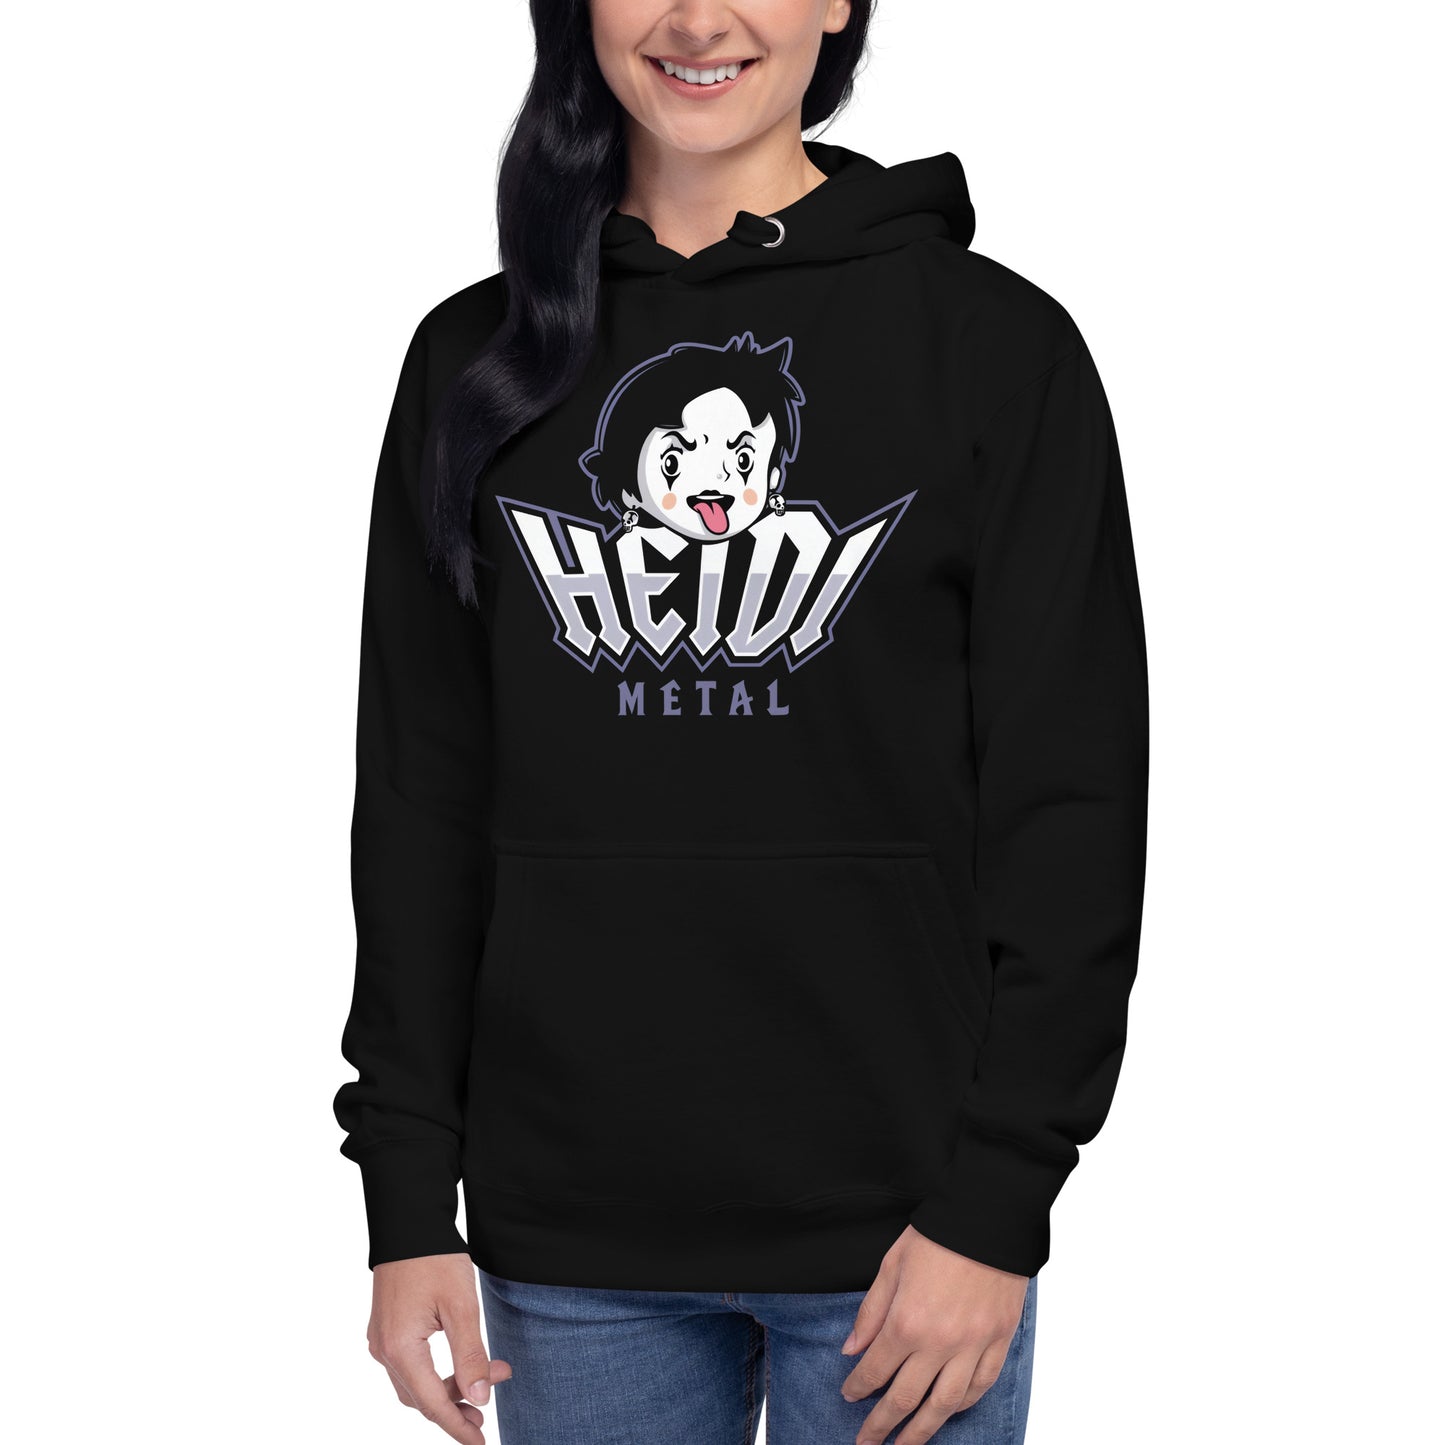 Hoodie de Heidi Metal, Disponible en la mejor tienda online para comprar tu merch favorita, la mejor Calidad, compra Ahora en Superstar!